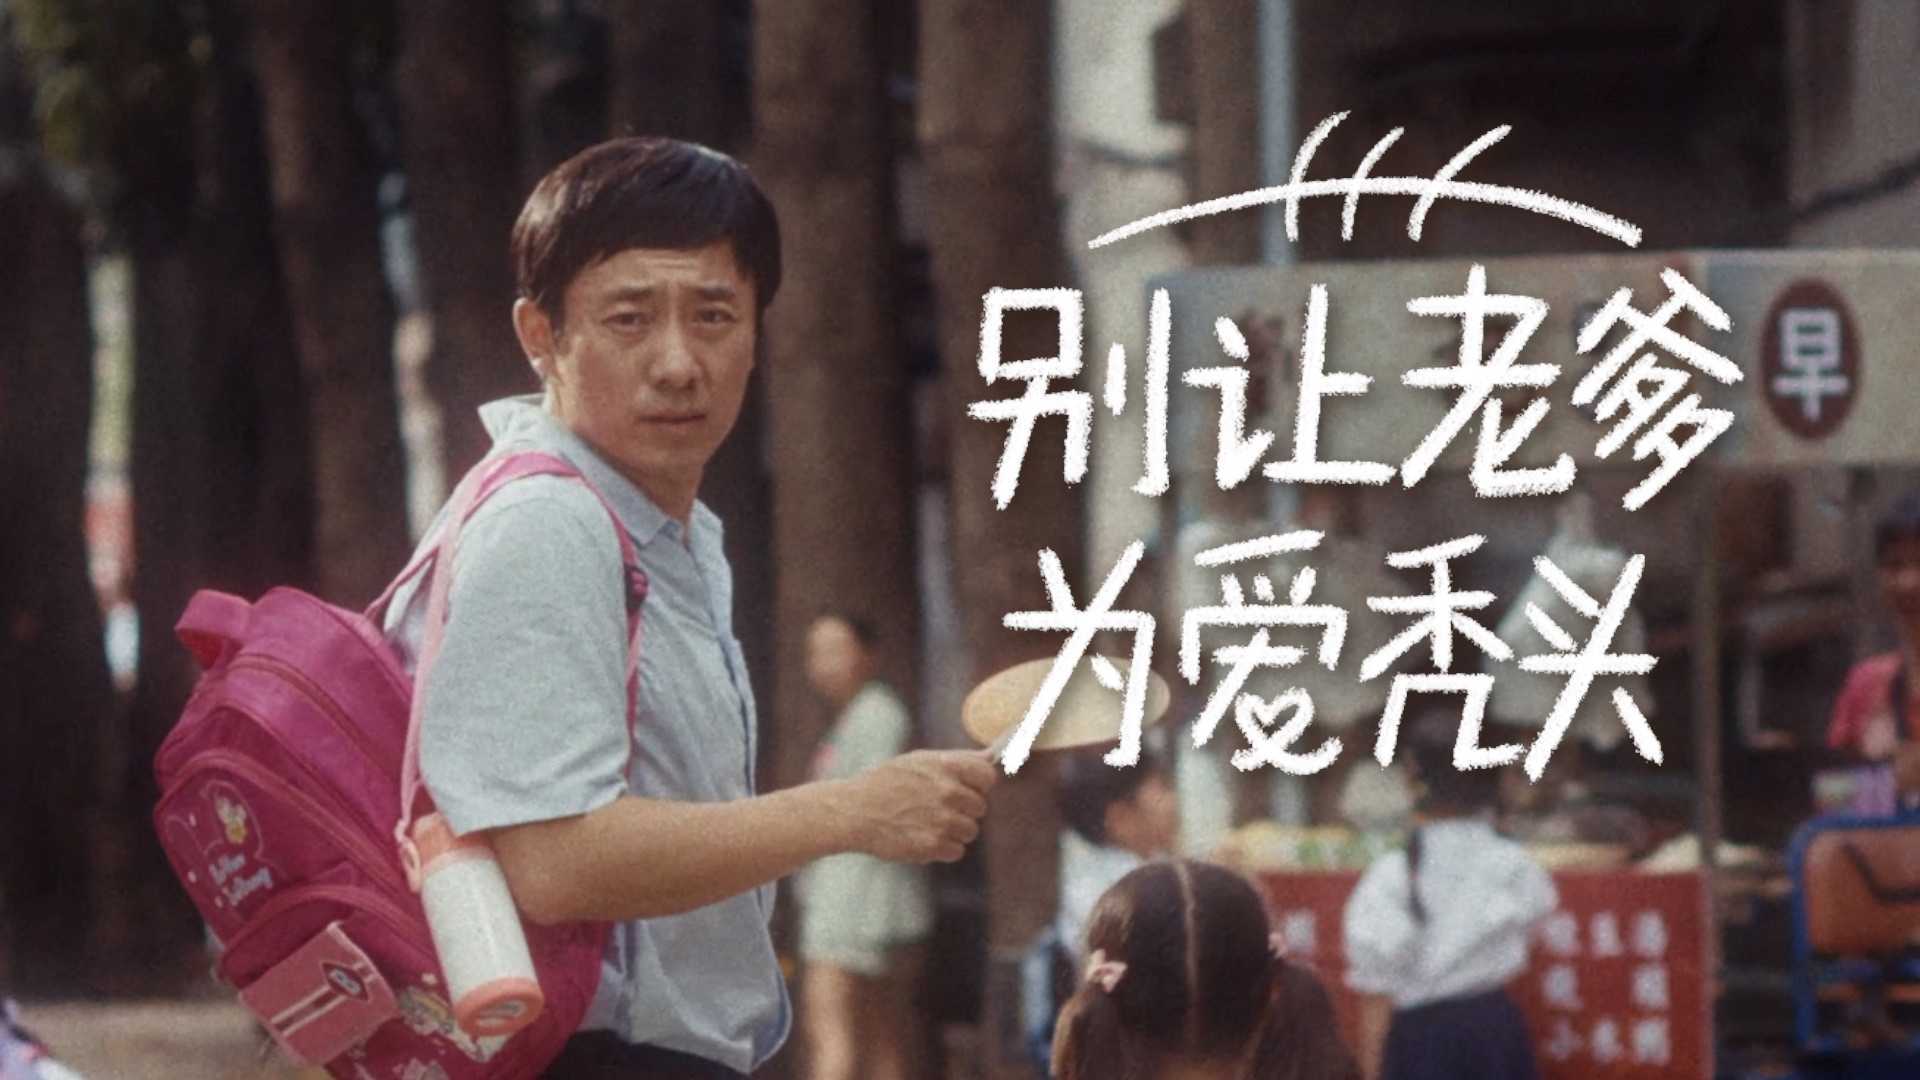 海飞丝父亲节广告「别让老爹 为爱秃头」 dir.